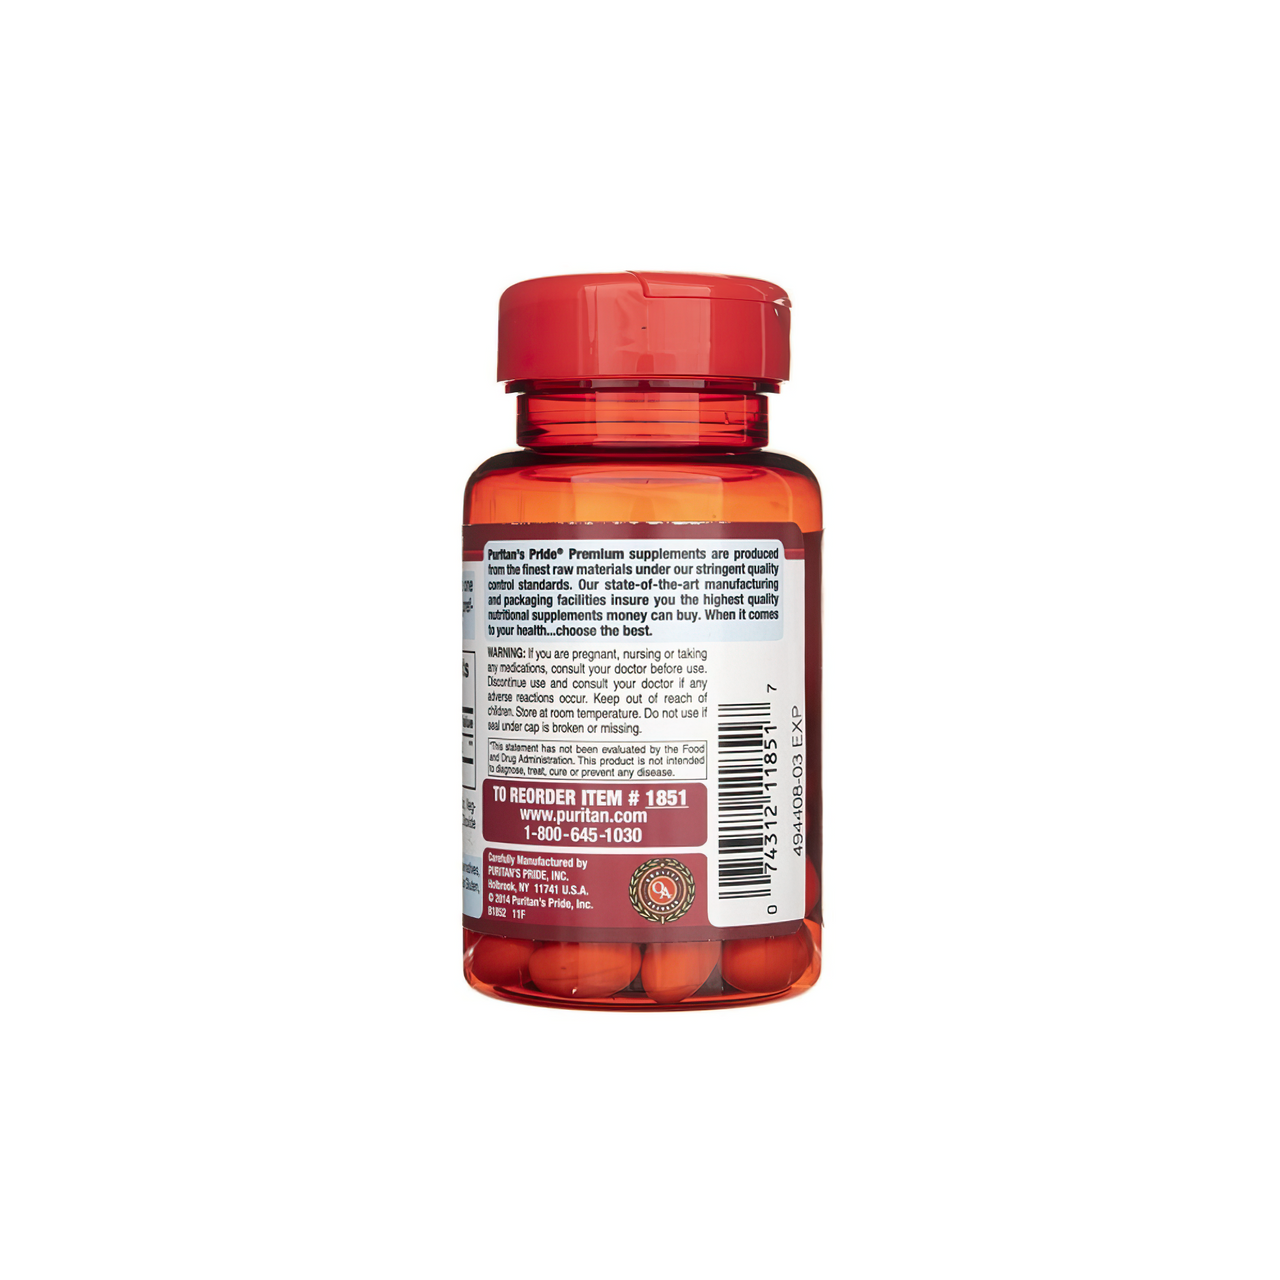 Flacone di Coenzima Q10 - 120 mg 60 softgel a rilascio rapido di Puritan's Pride su sfondo bianco.